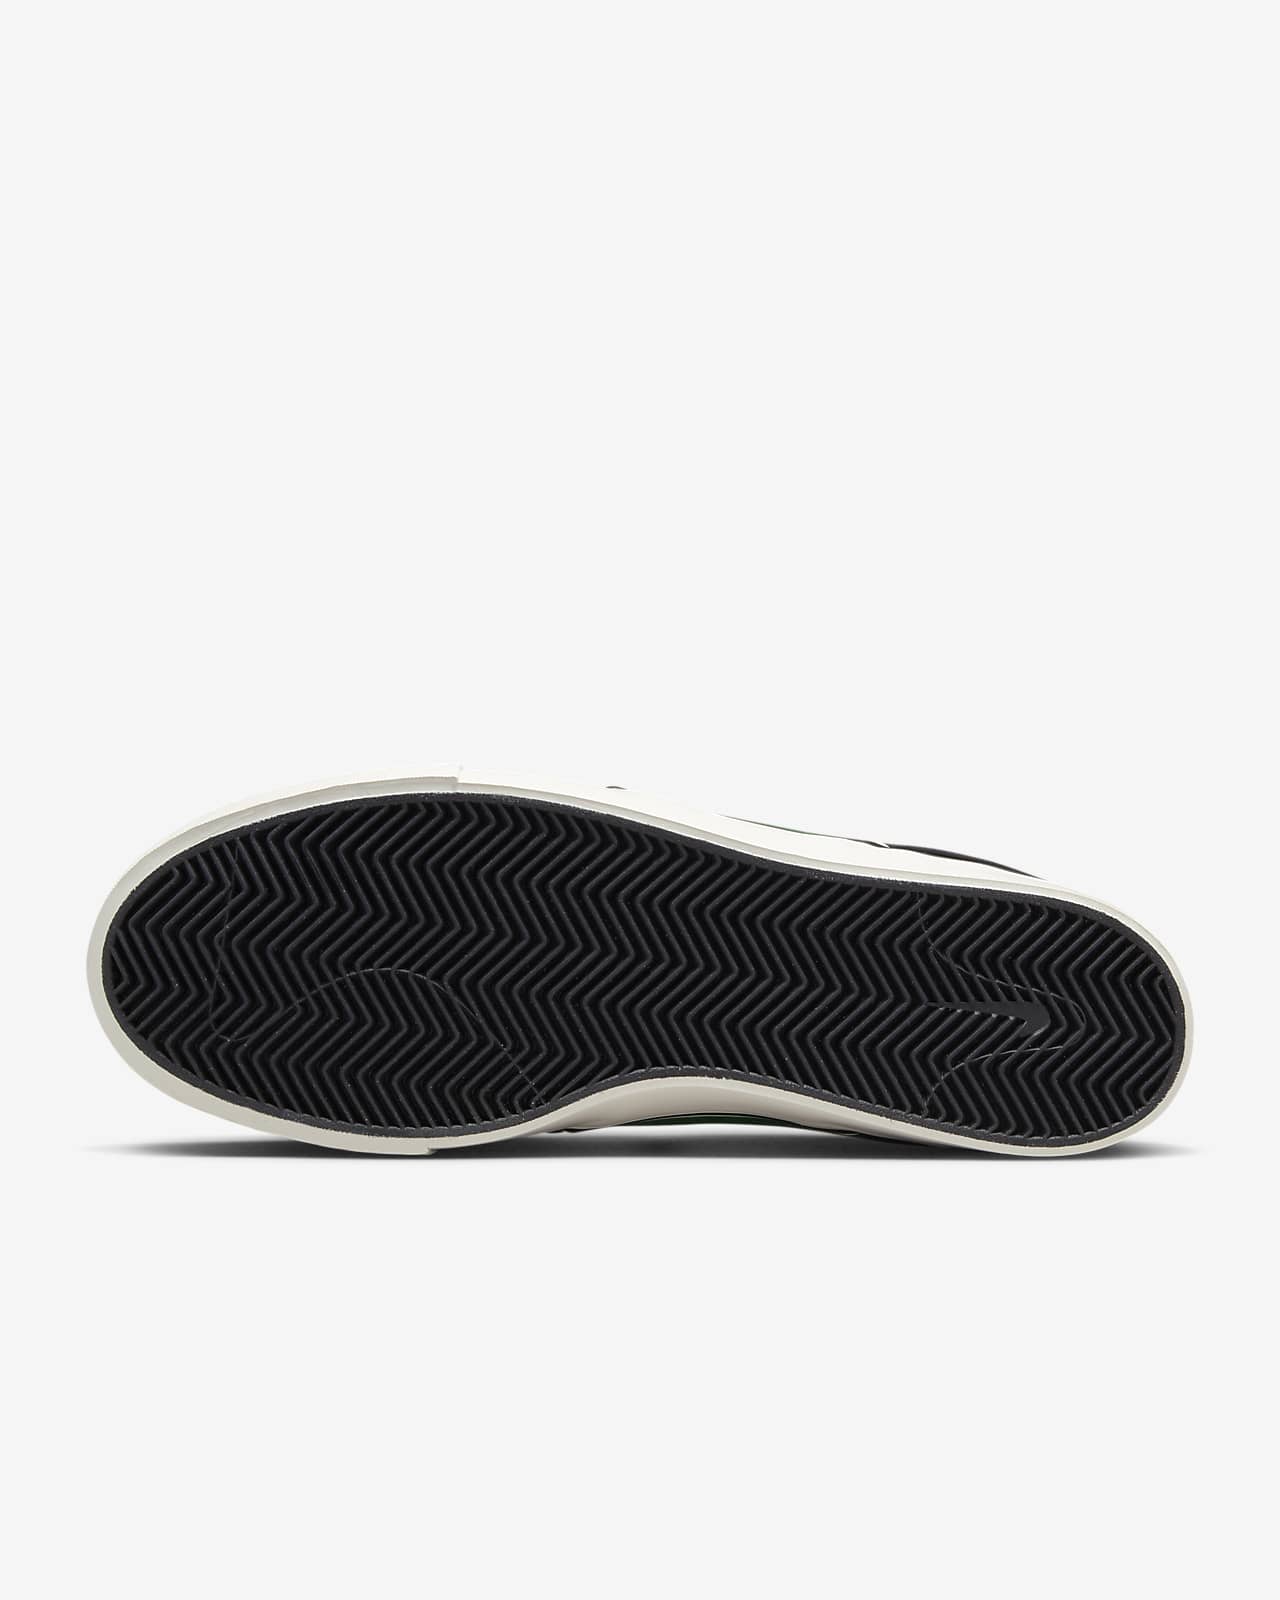 Nike Zoom Janoski OG+ Shoes. Nike JP